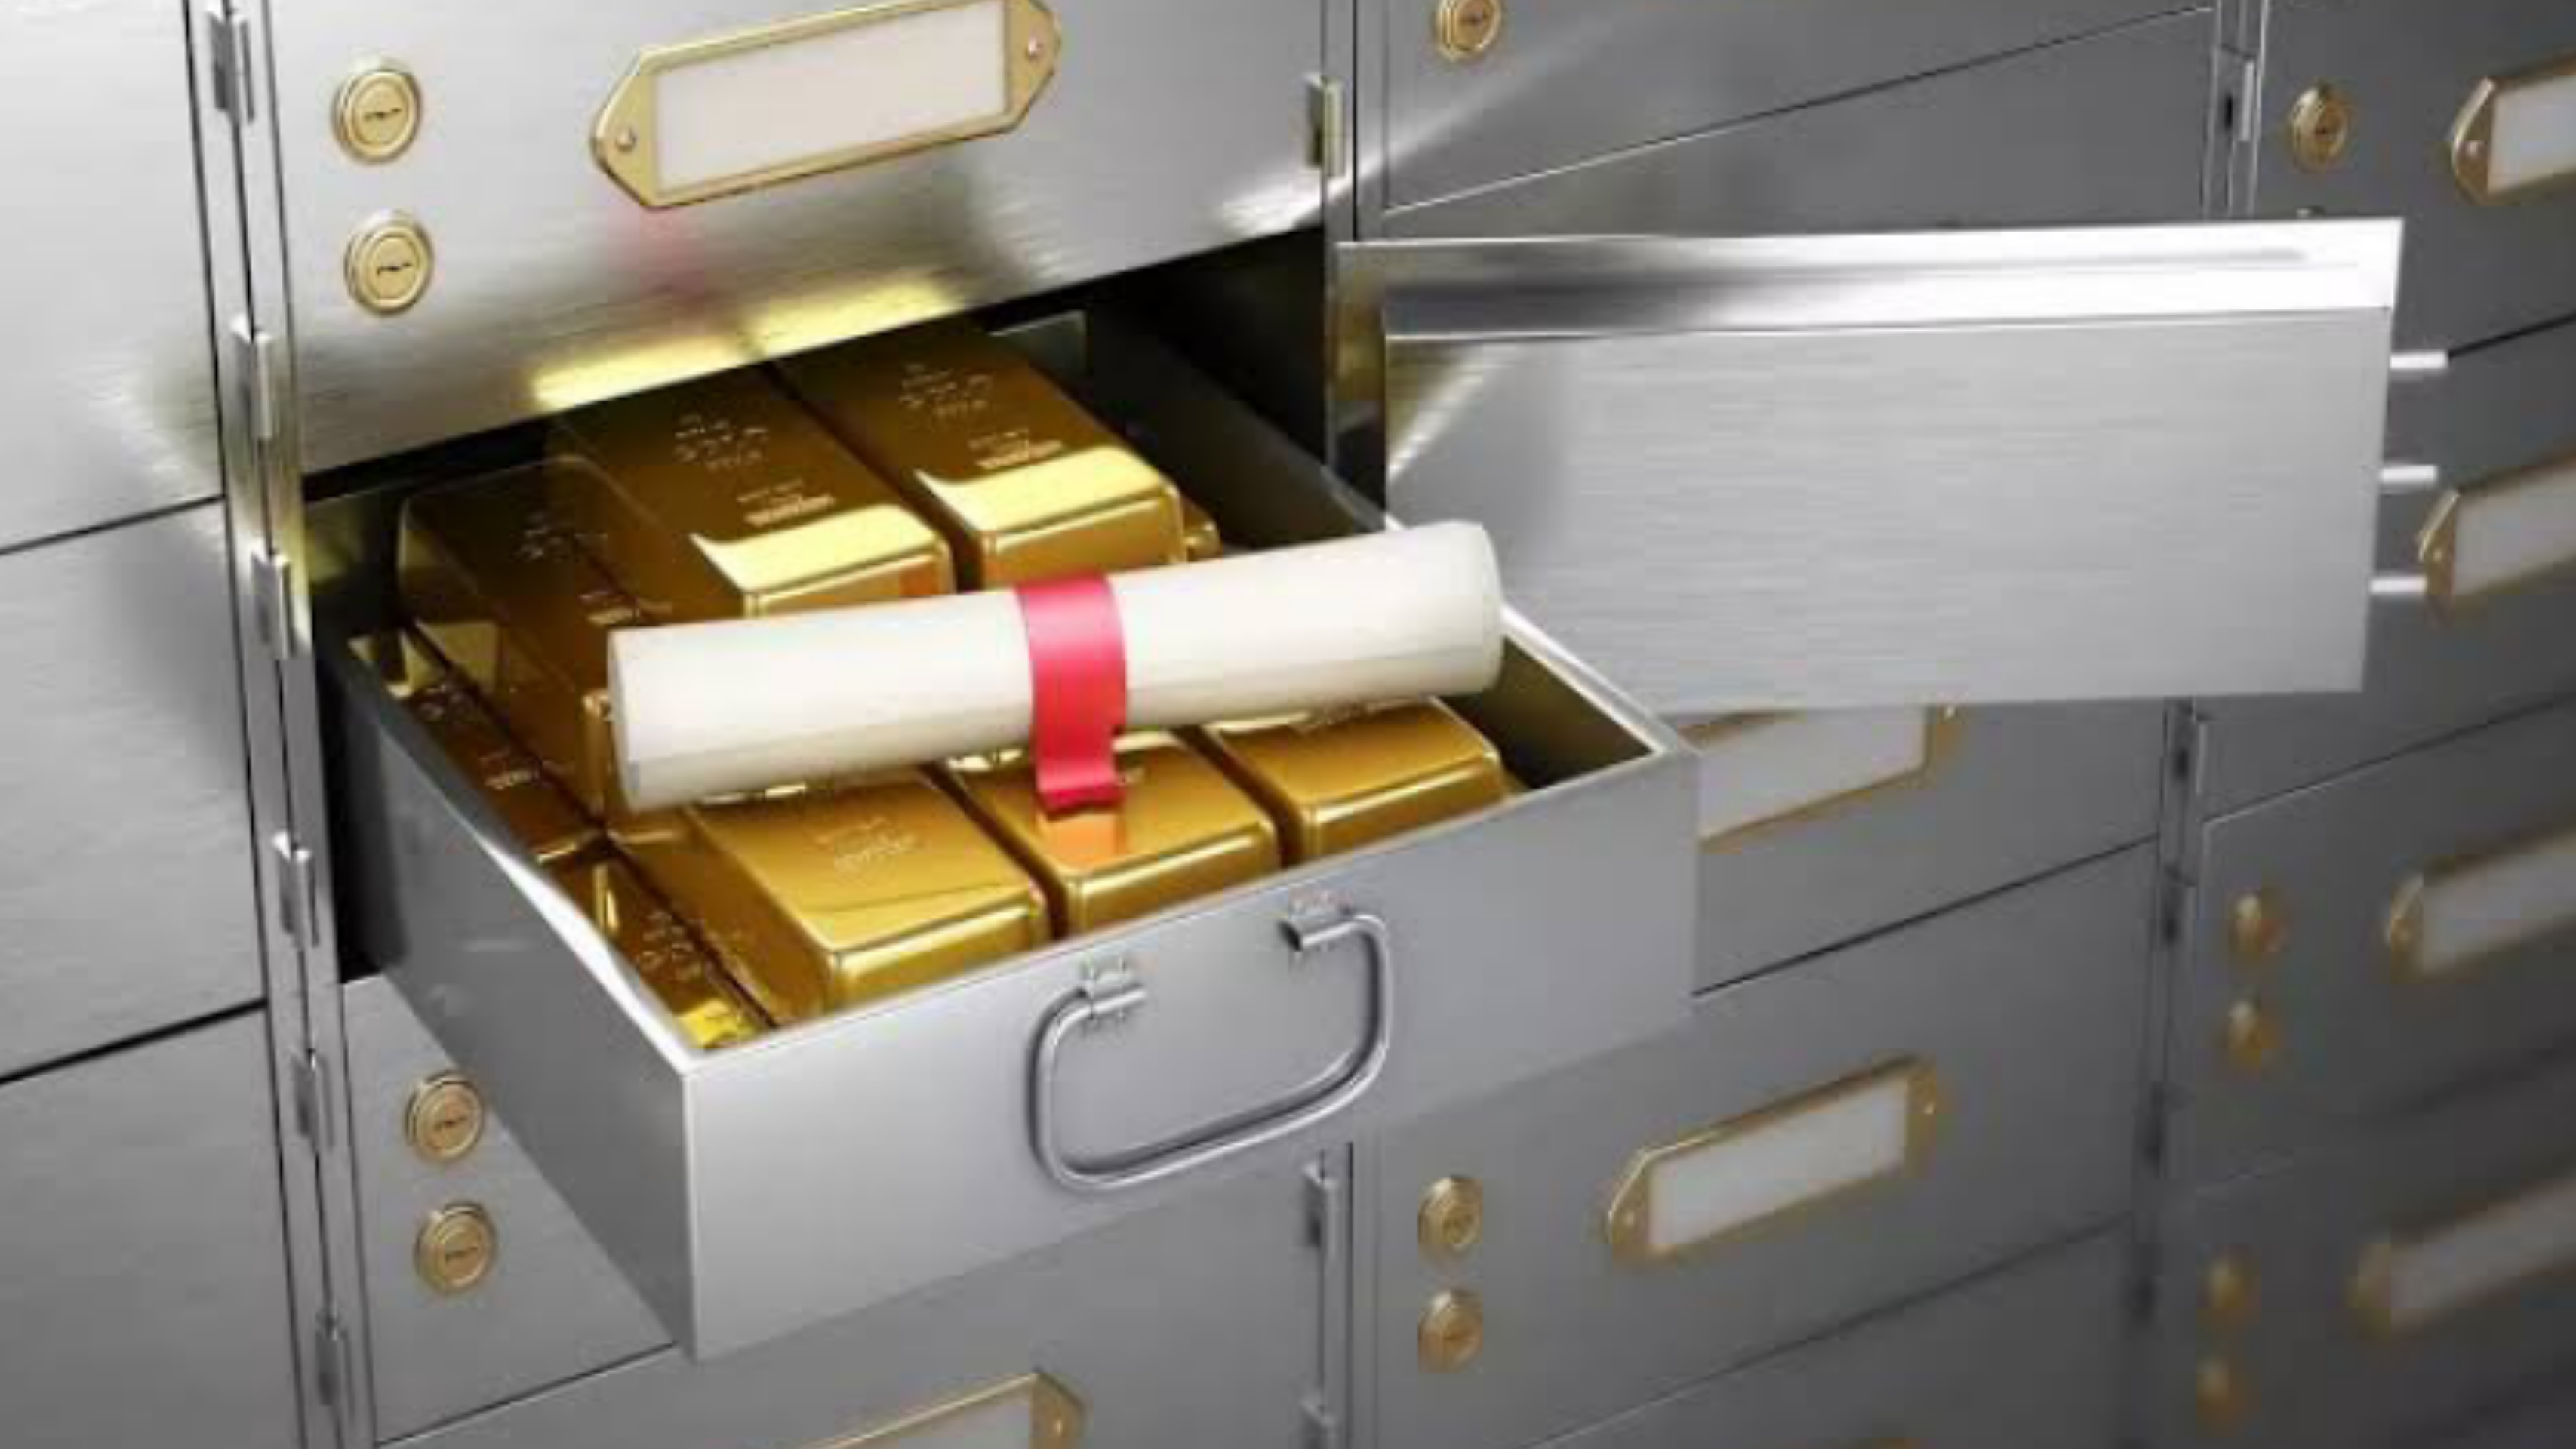 Bank locker loot: बैंक मैनेजर, लाकर इंचार्ज सहित अन्य के पास से बरामद हुआ सोना